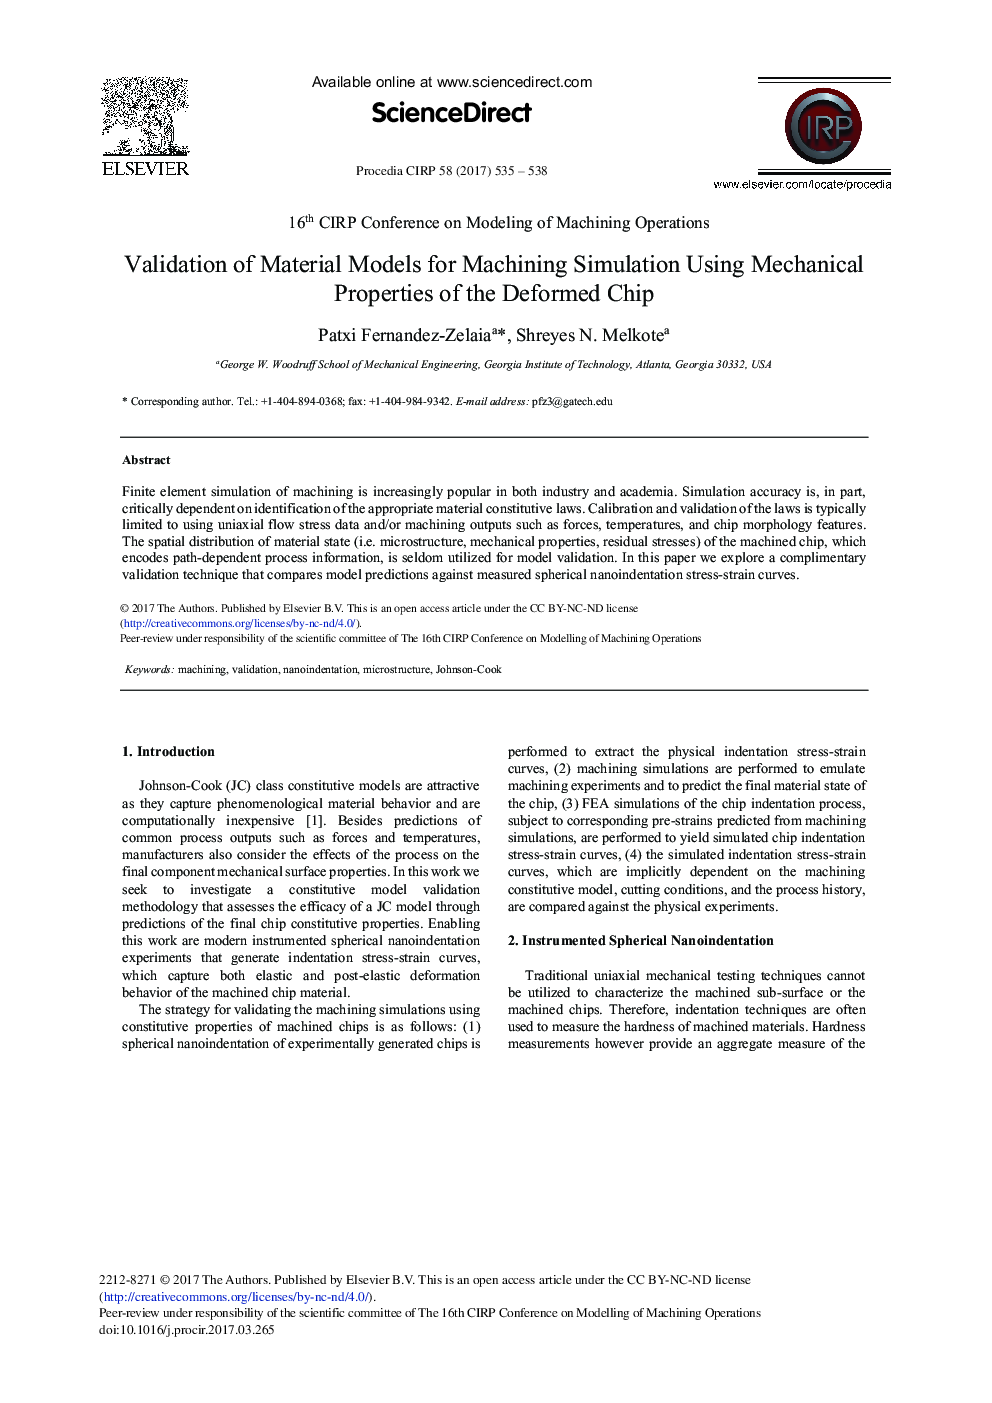 اعتبار سنجی مدل های مواد برای شبیه سازی ماشینکاری با استفاده از خواص مکانیکی تراشه های شکل پذیر 